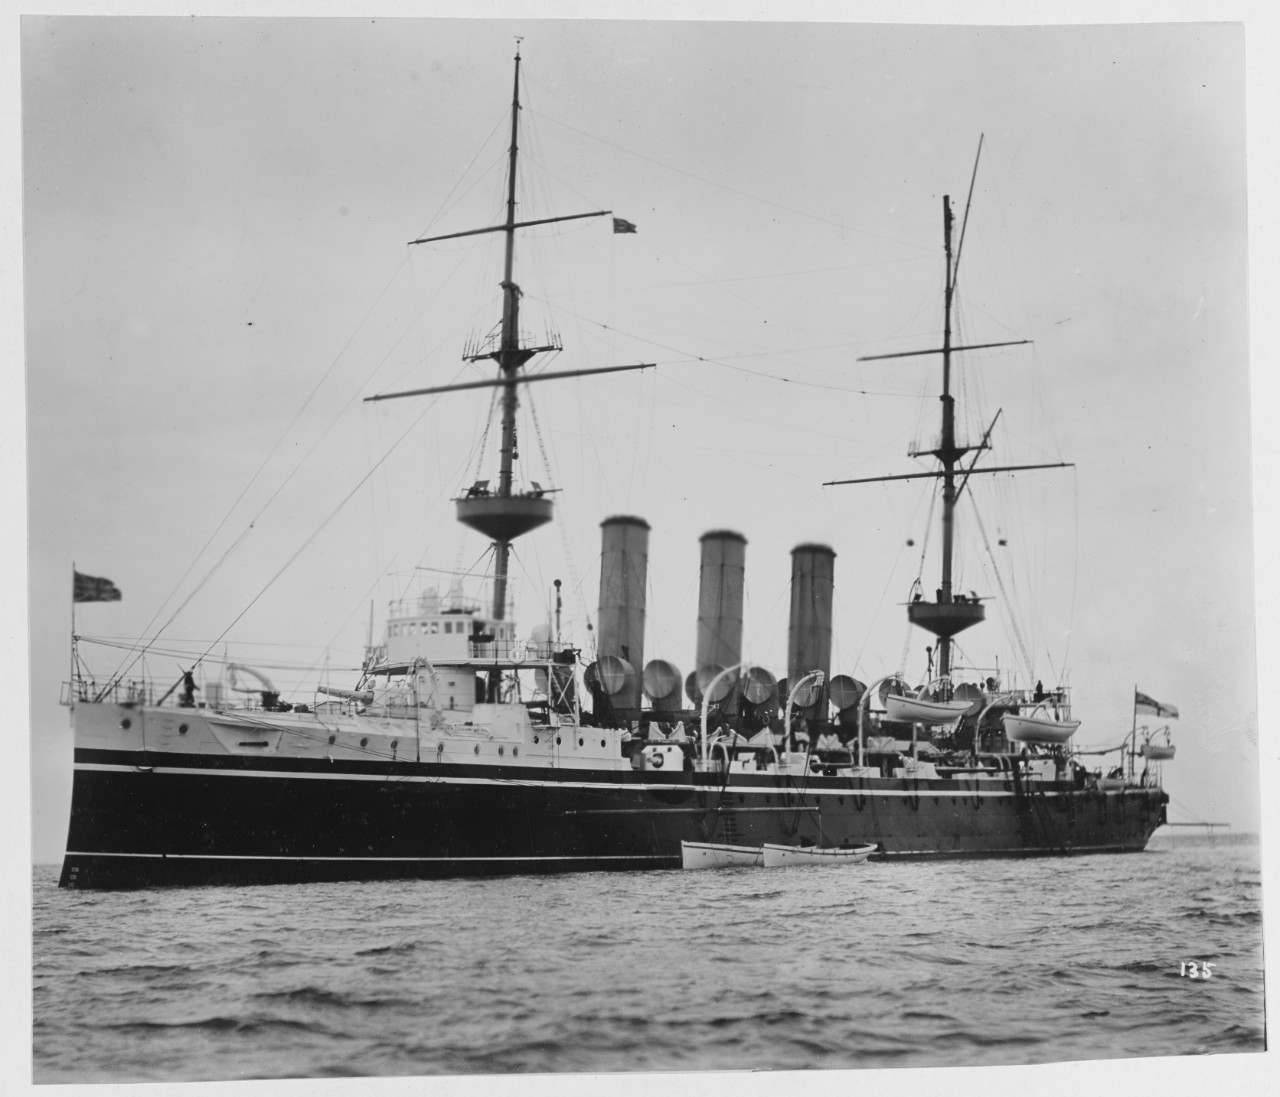 HMS HYACINTH (British cruiser, 1898)